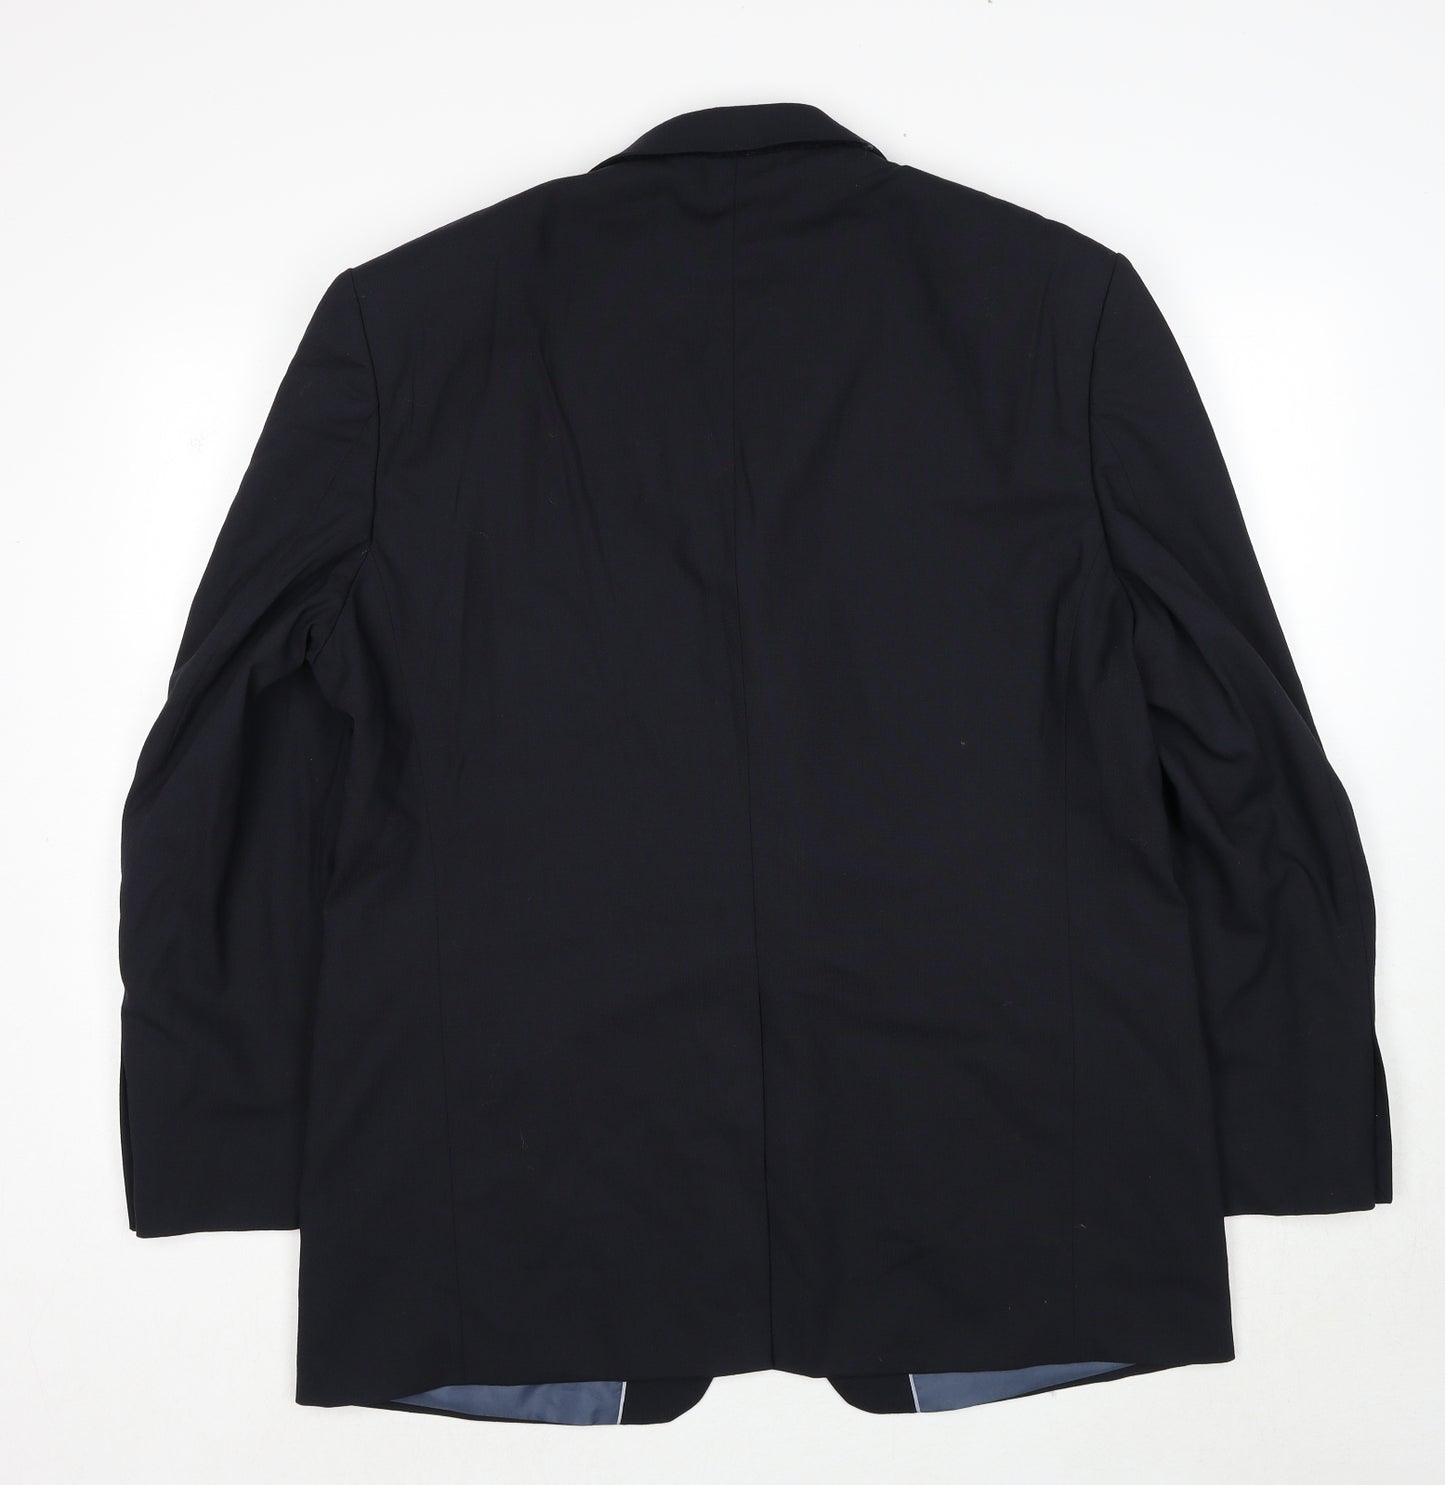 Marks and Spencer Mens Black Polyester Jacket Suit Jacket Size 44 Regular